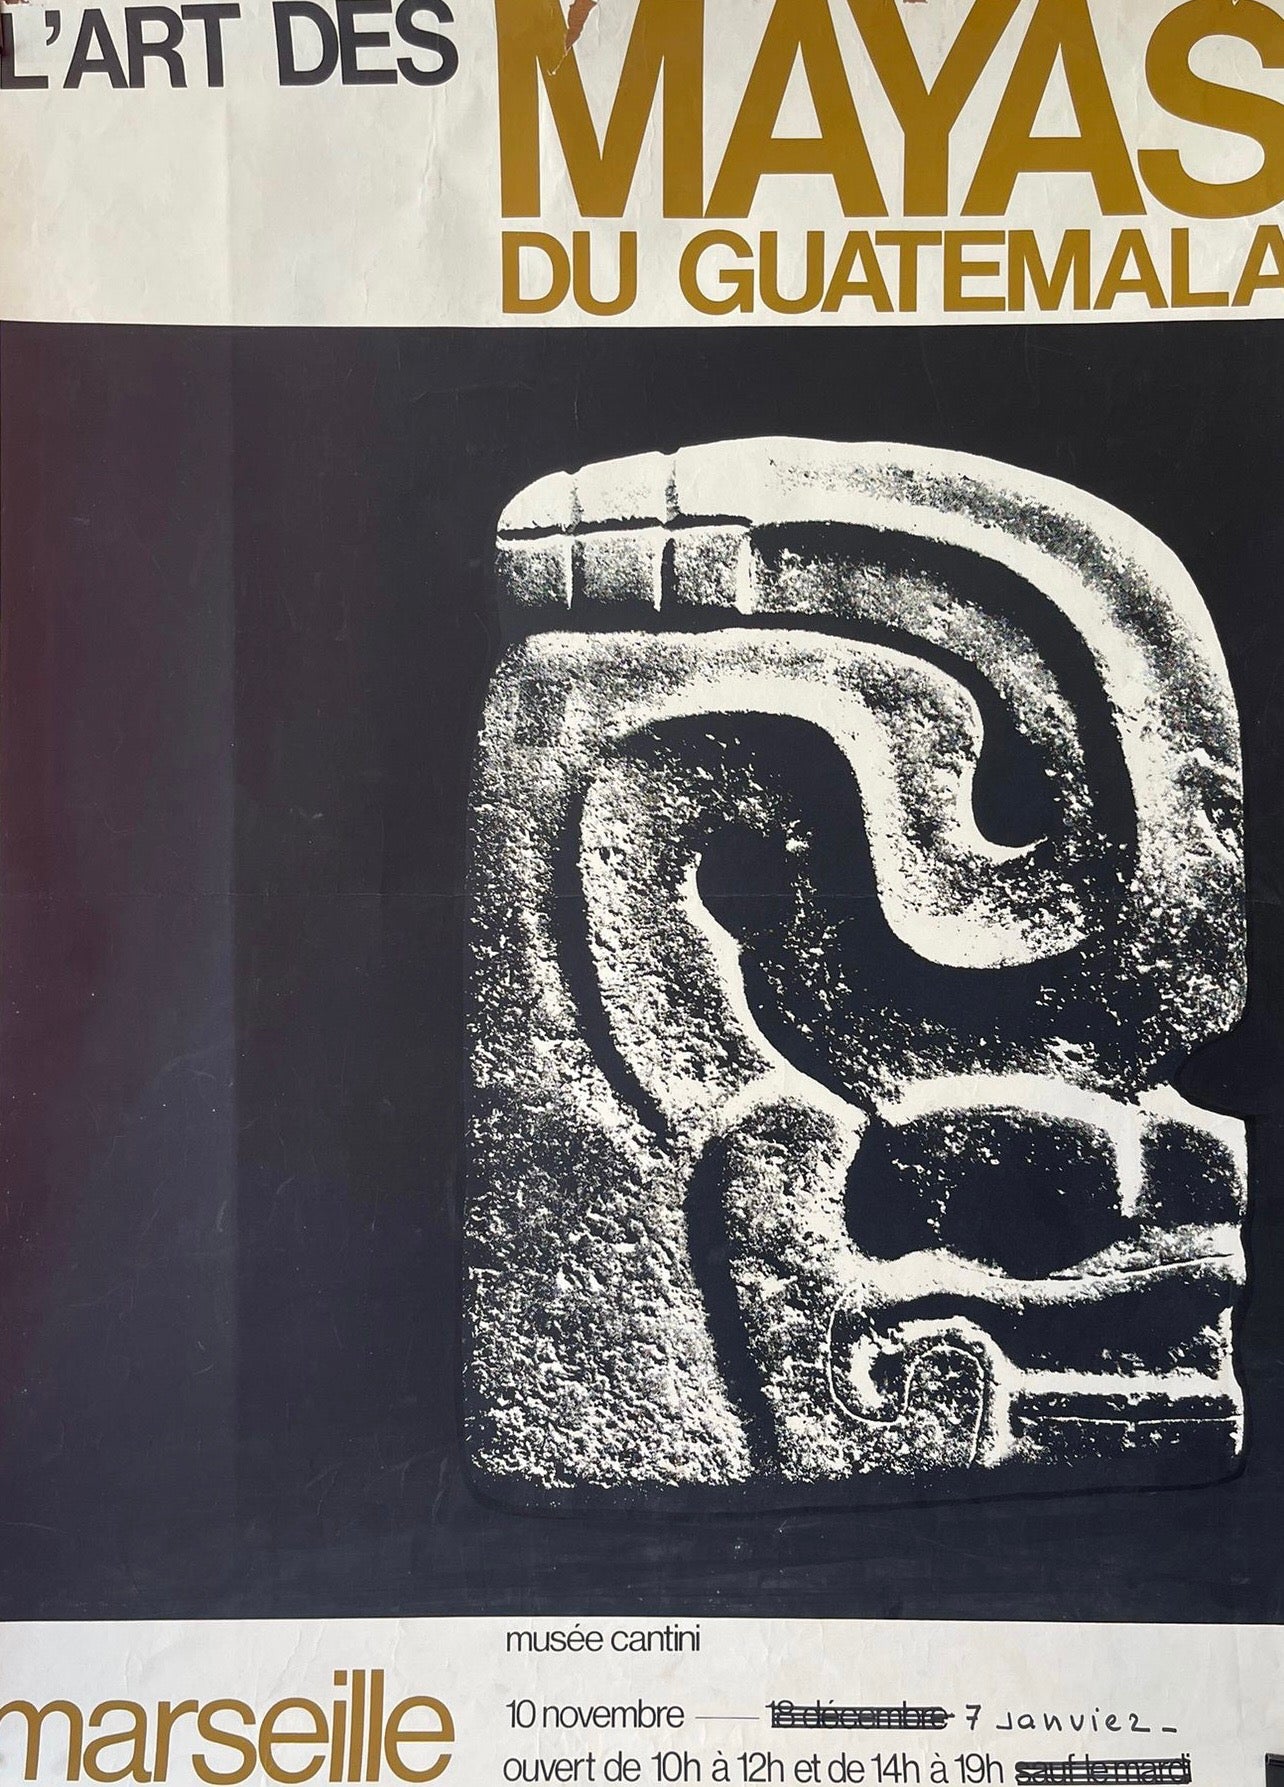 Mayas du Guatemala by Cantini